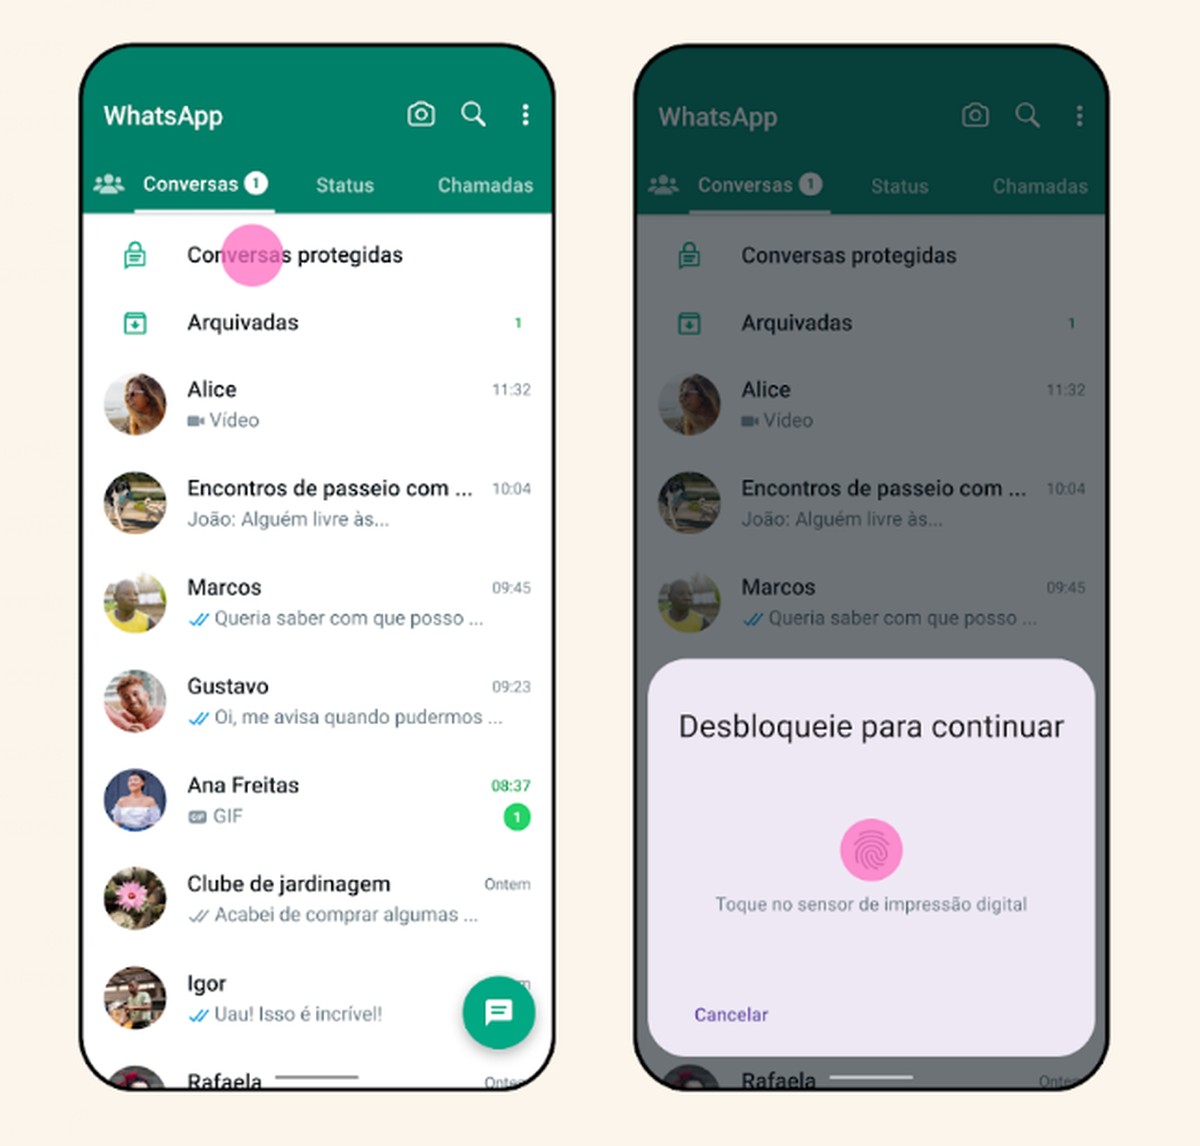 WhatsApp obtiene una nueva función para proteger las conversaciones.  Descubra cómo funciona la herramienta |  Tecnología